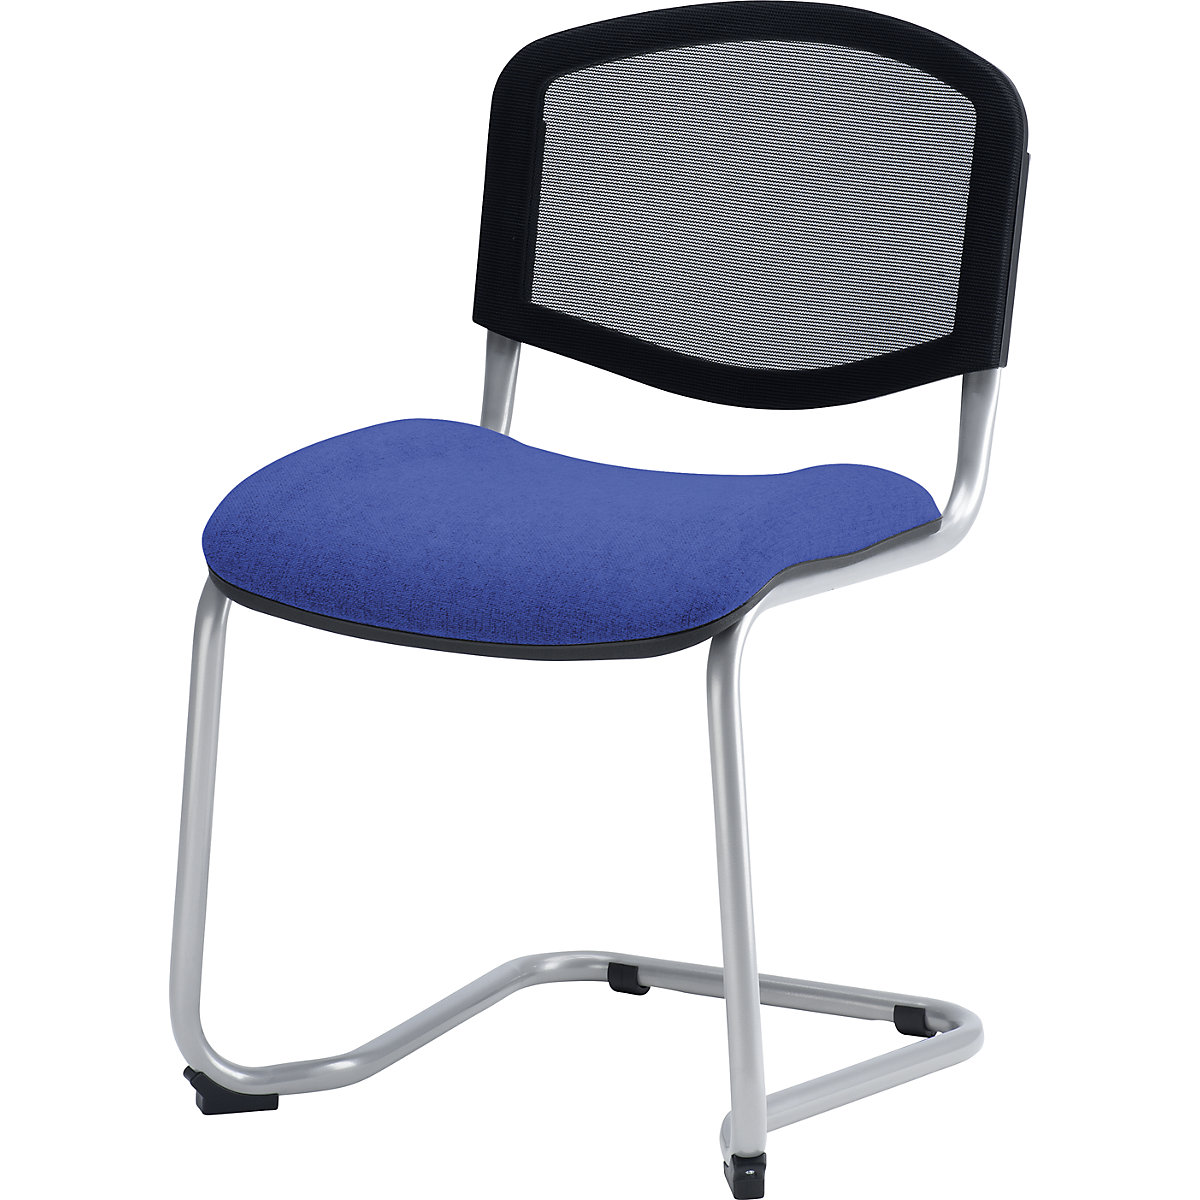 Konzolna stolica, s mogućnošću slaganja jedne na drugu